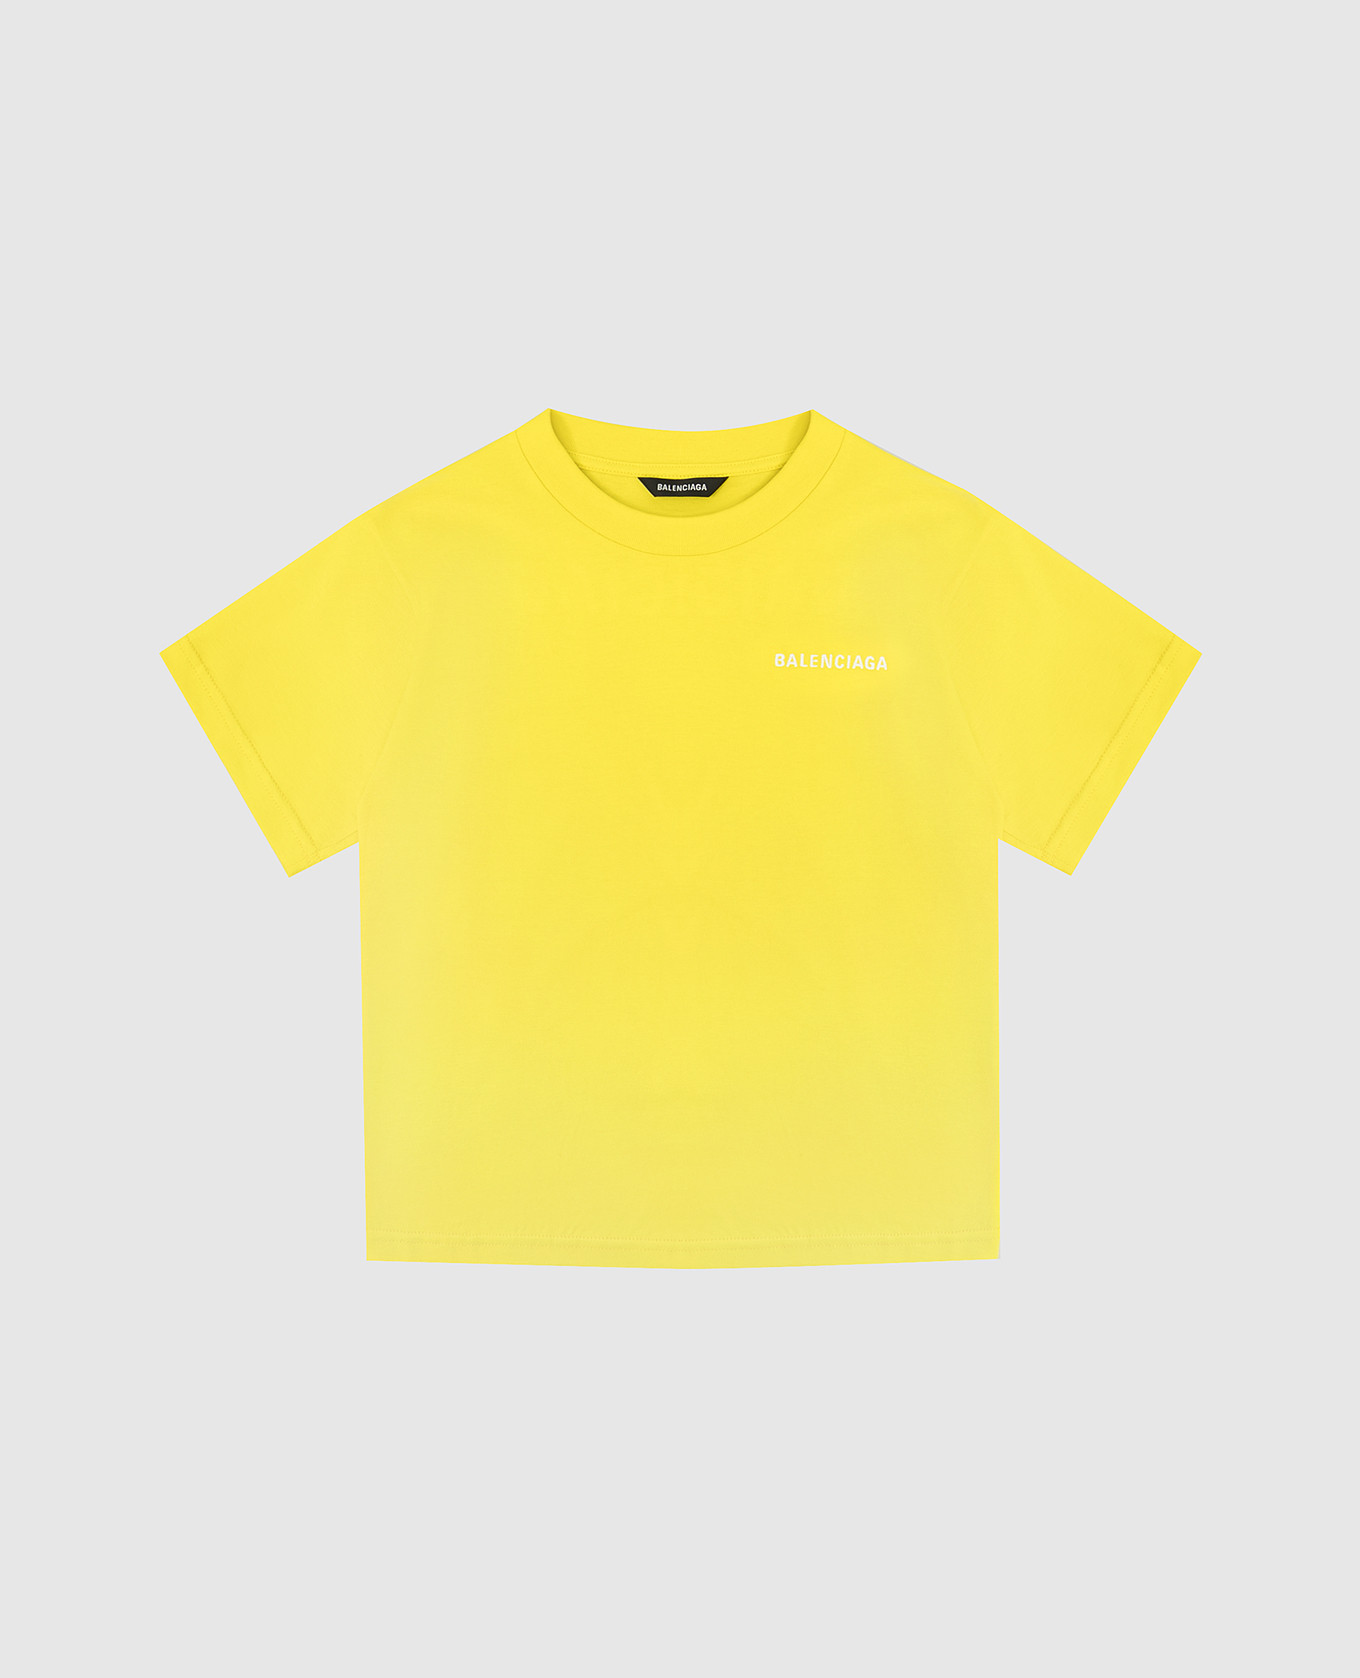 Детская желтая футболка с вышивкой логотипа